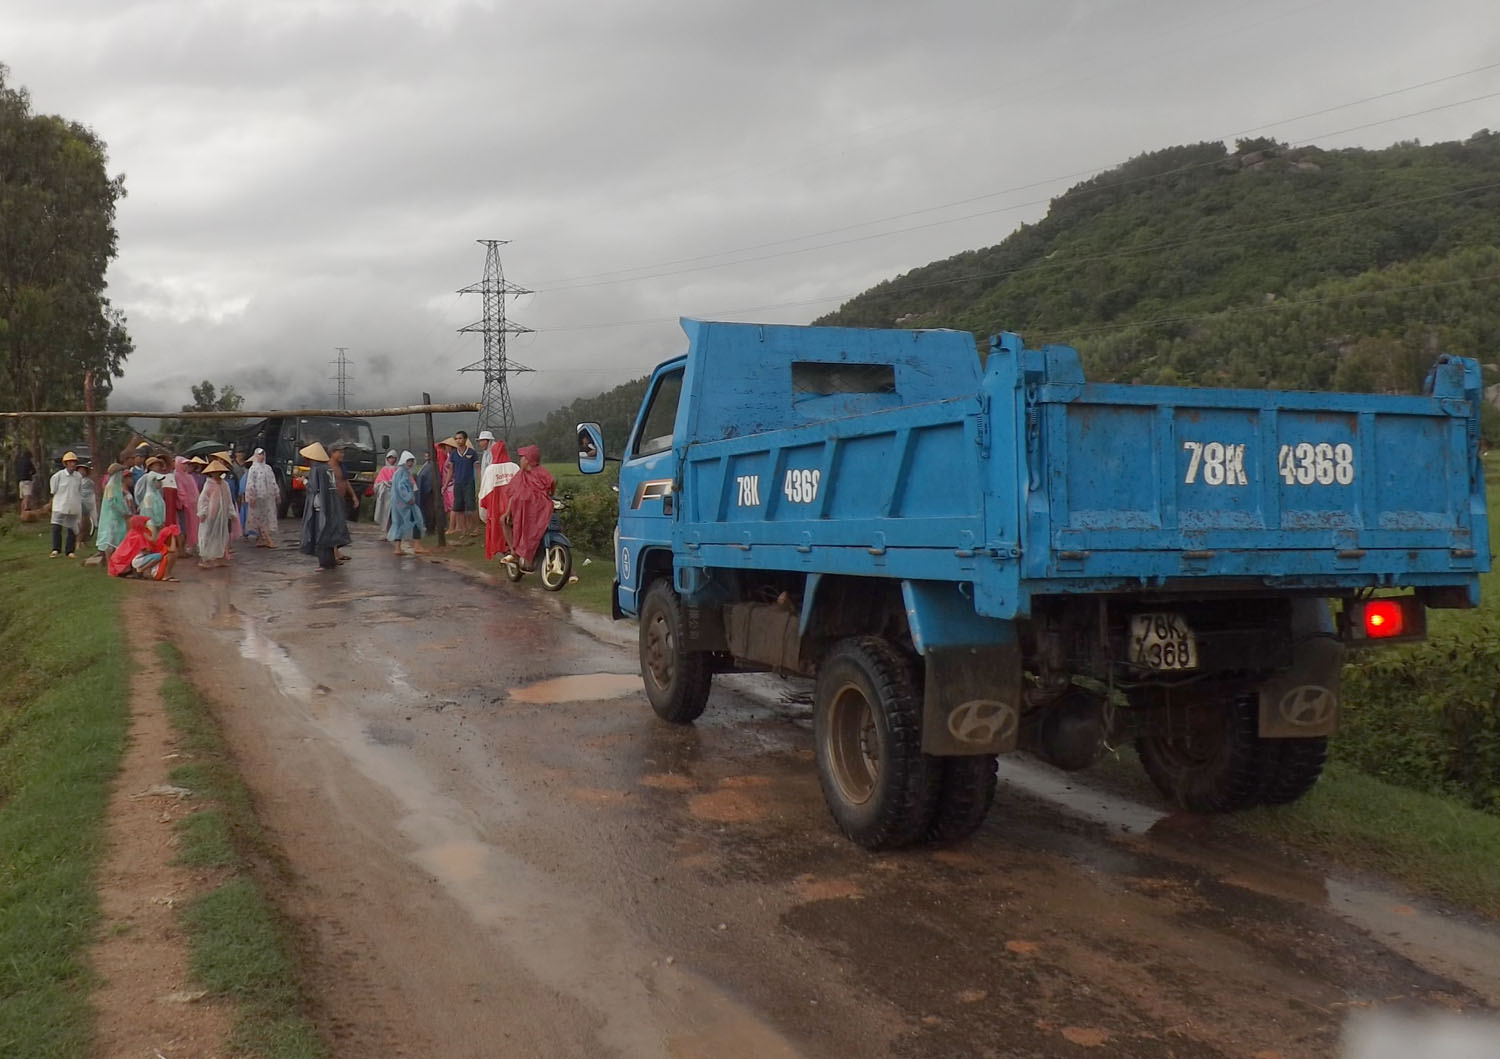 An ninh - Hình sự - Phú Yên: Dân chặn xe tải, đòi đối thoại với lãnh đạo xã